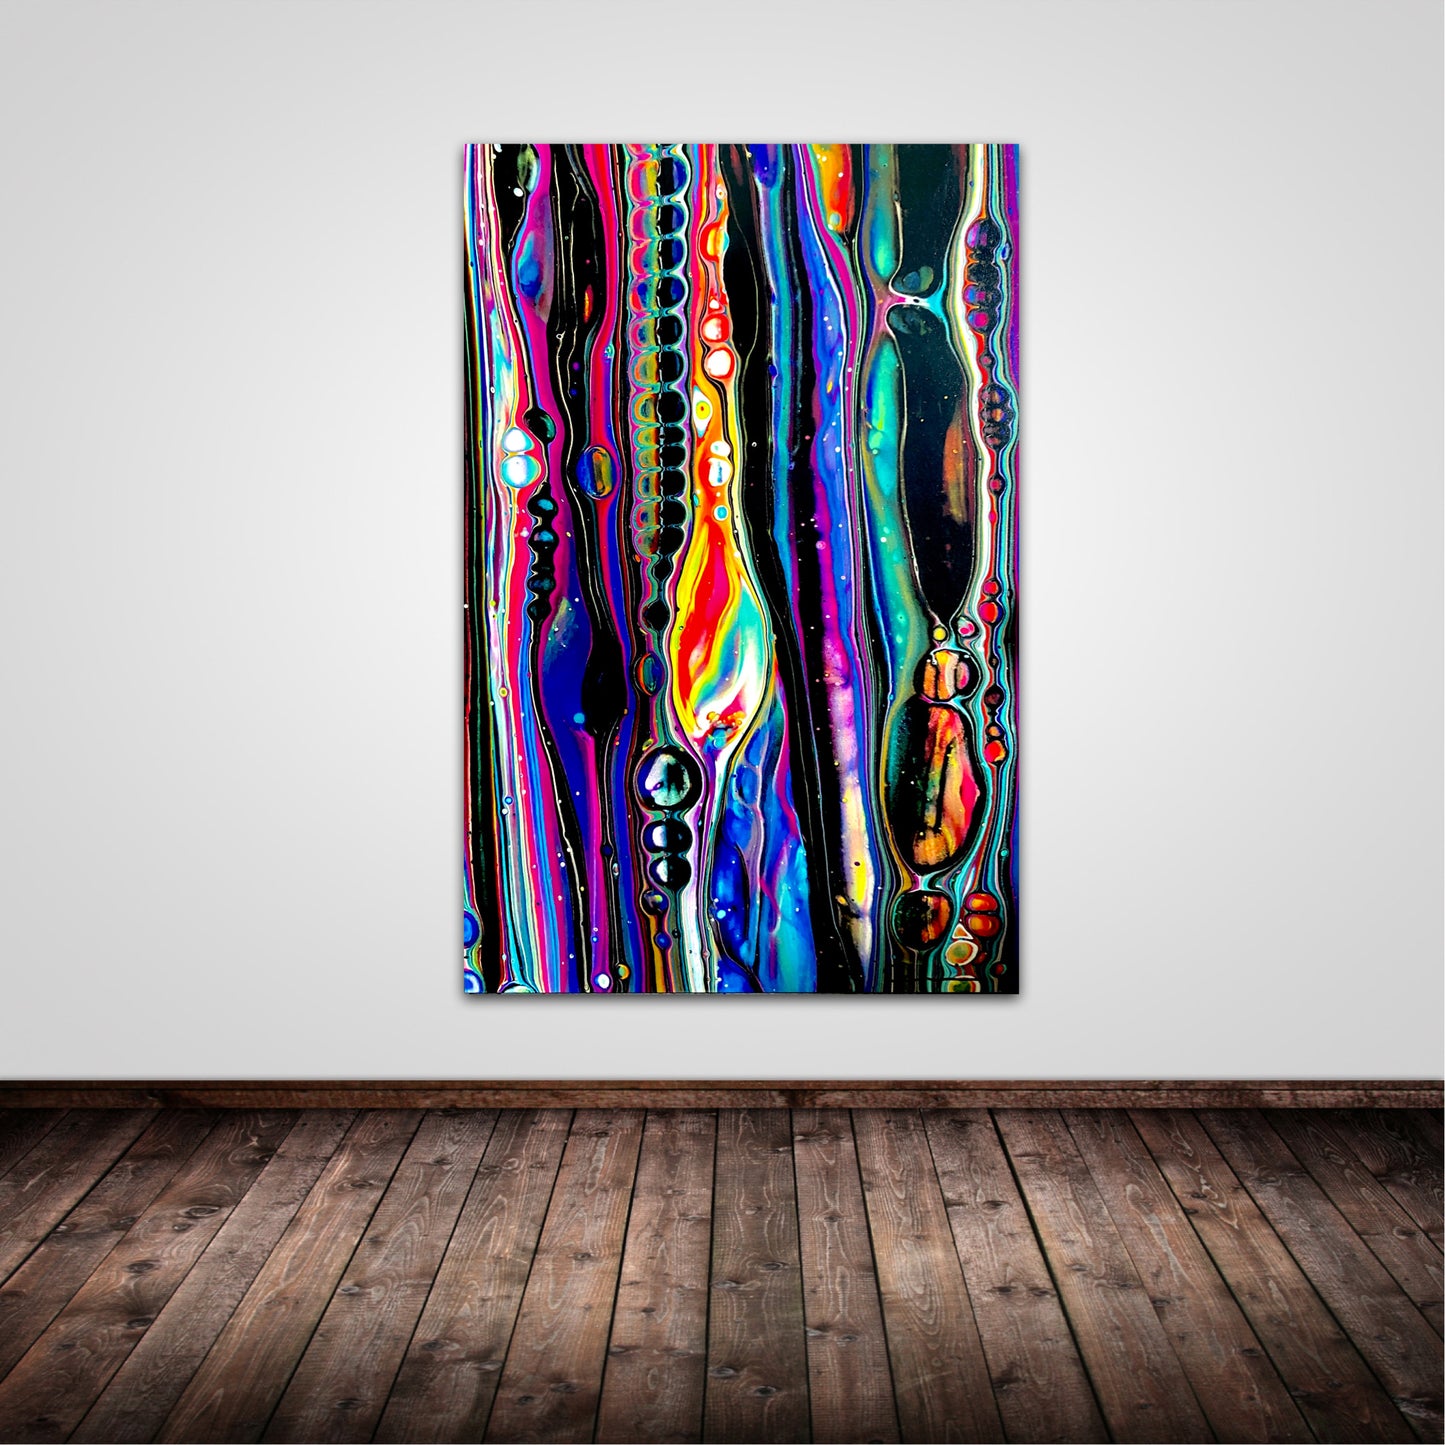 Liquid Dreams (24x36) - Abstract canvas print